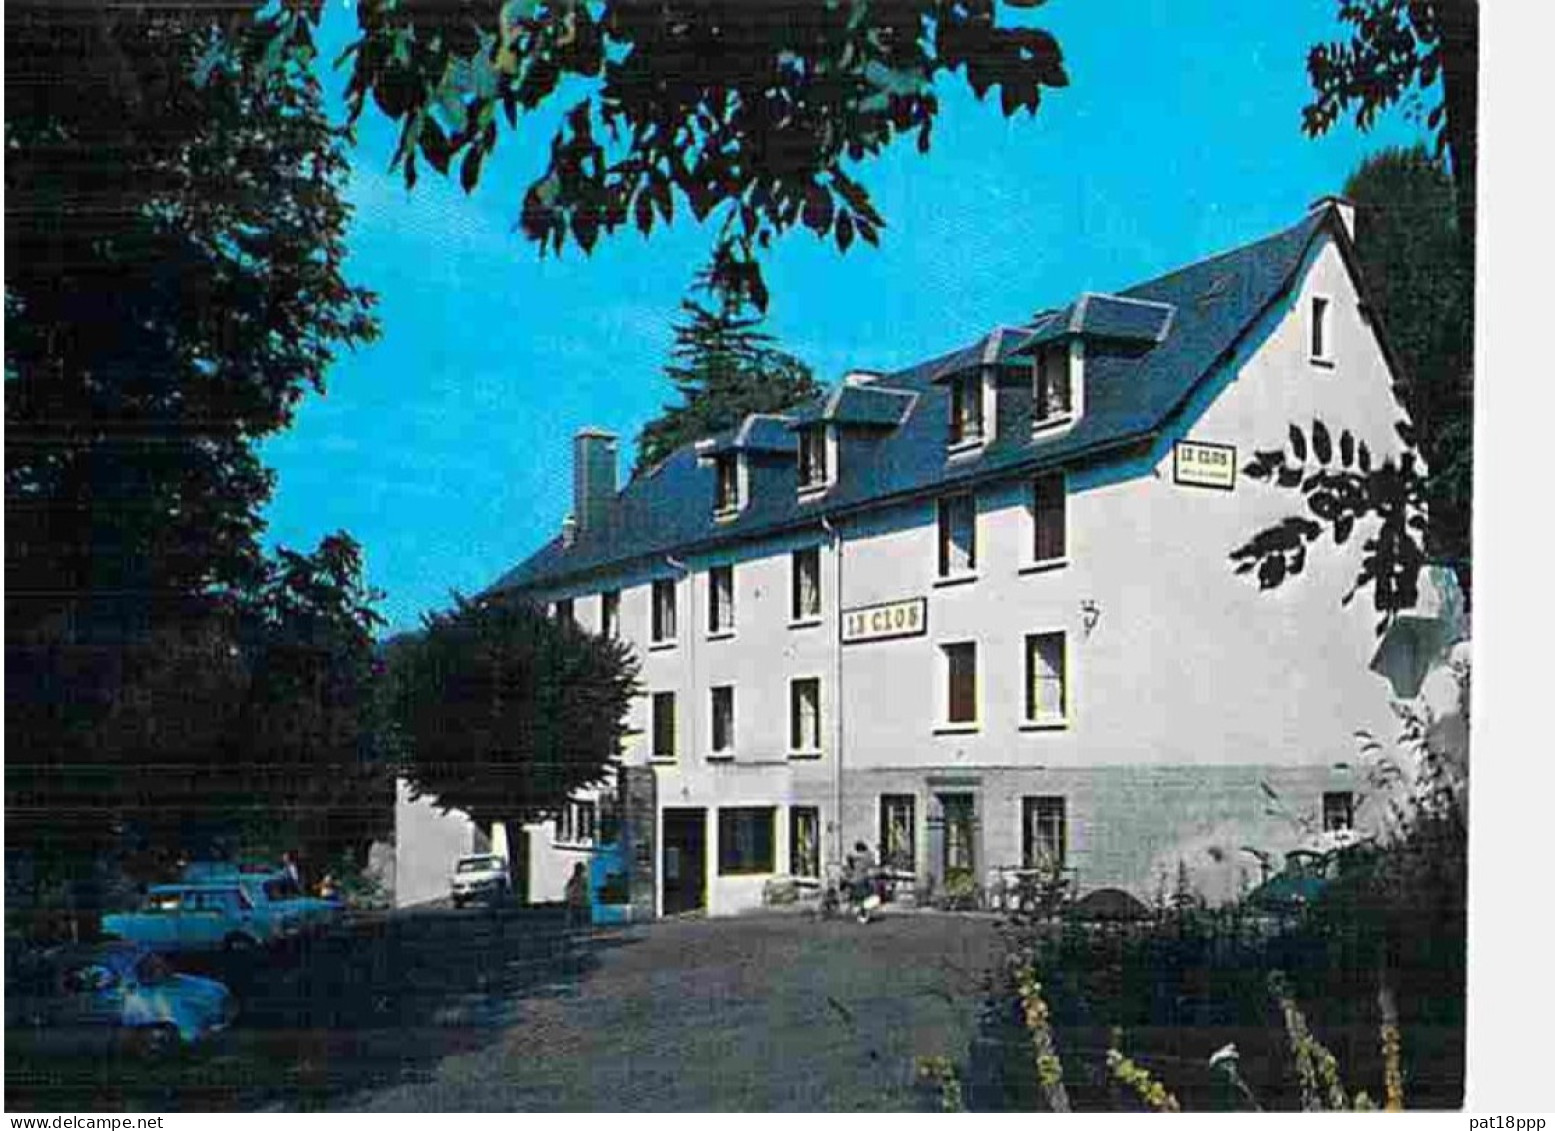 Lot de 20 cartes HOTEL et/ou RESTAURANT - Dpt 63 - Puy de Dôme (FRANCE)  CPSM-CPM grand format (années 1960-90)